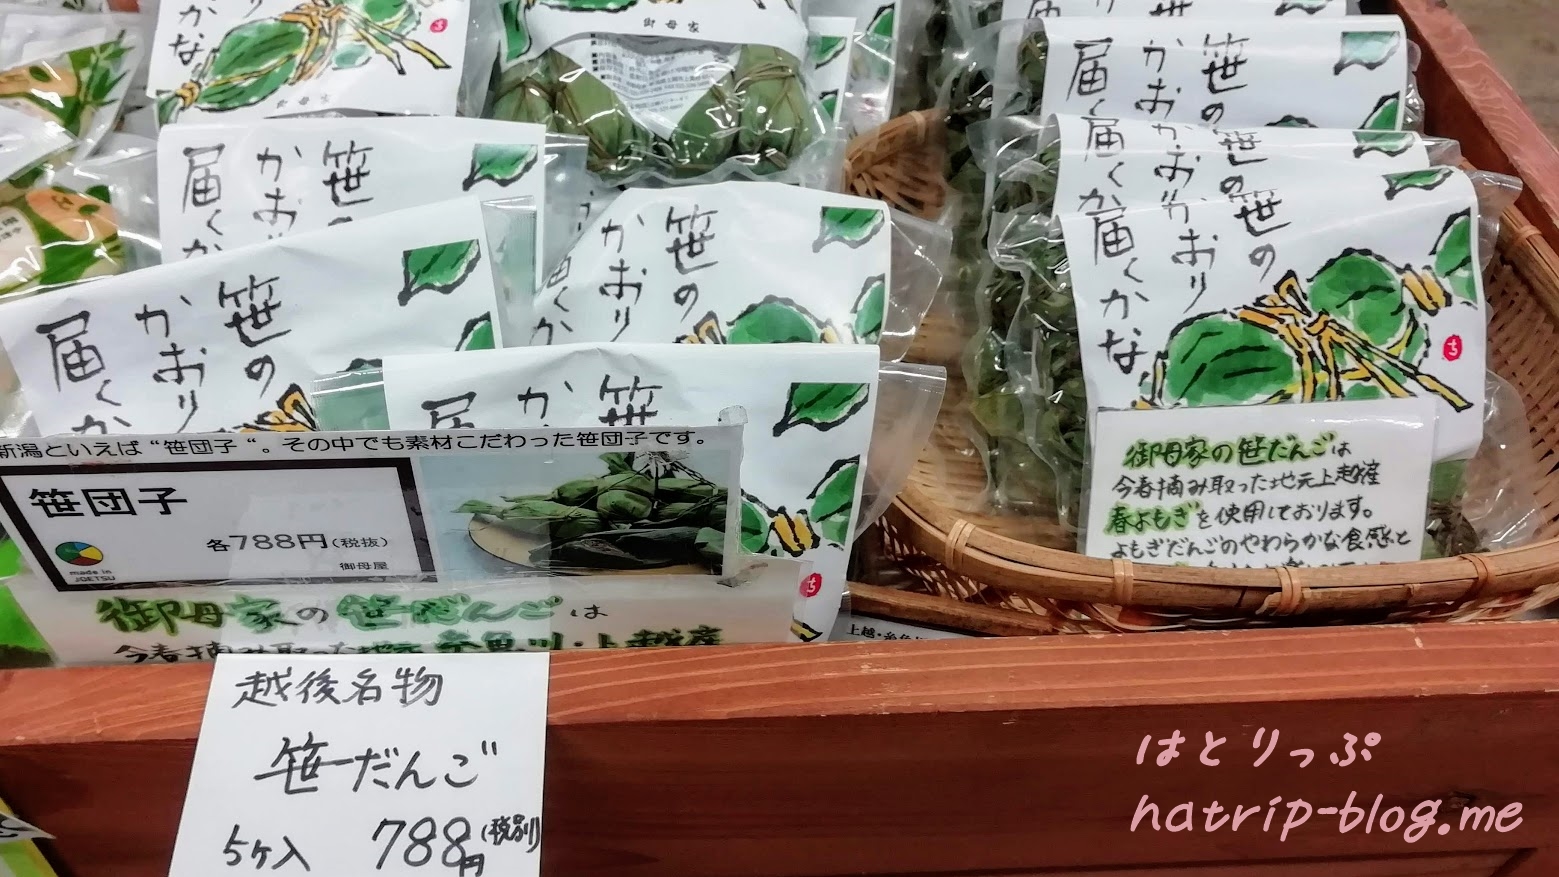 新潟県上越市 道の駅 うみてらす名立 食彩鮮魚市場 笹だんご